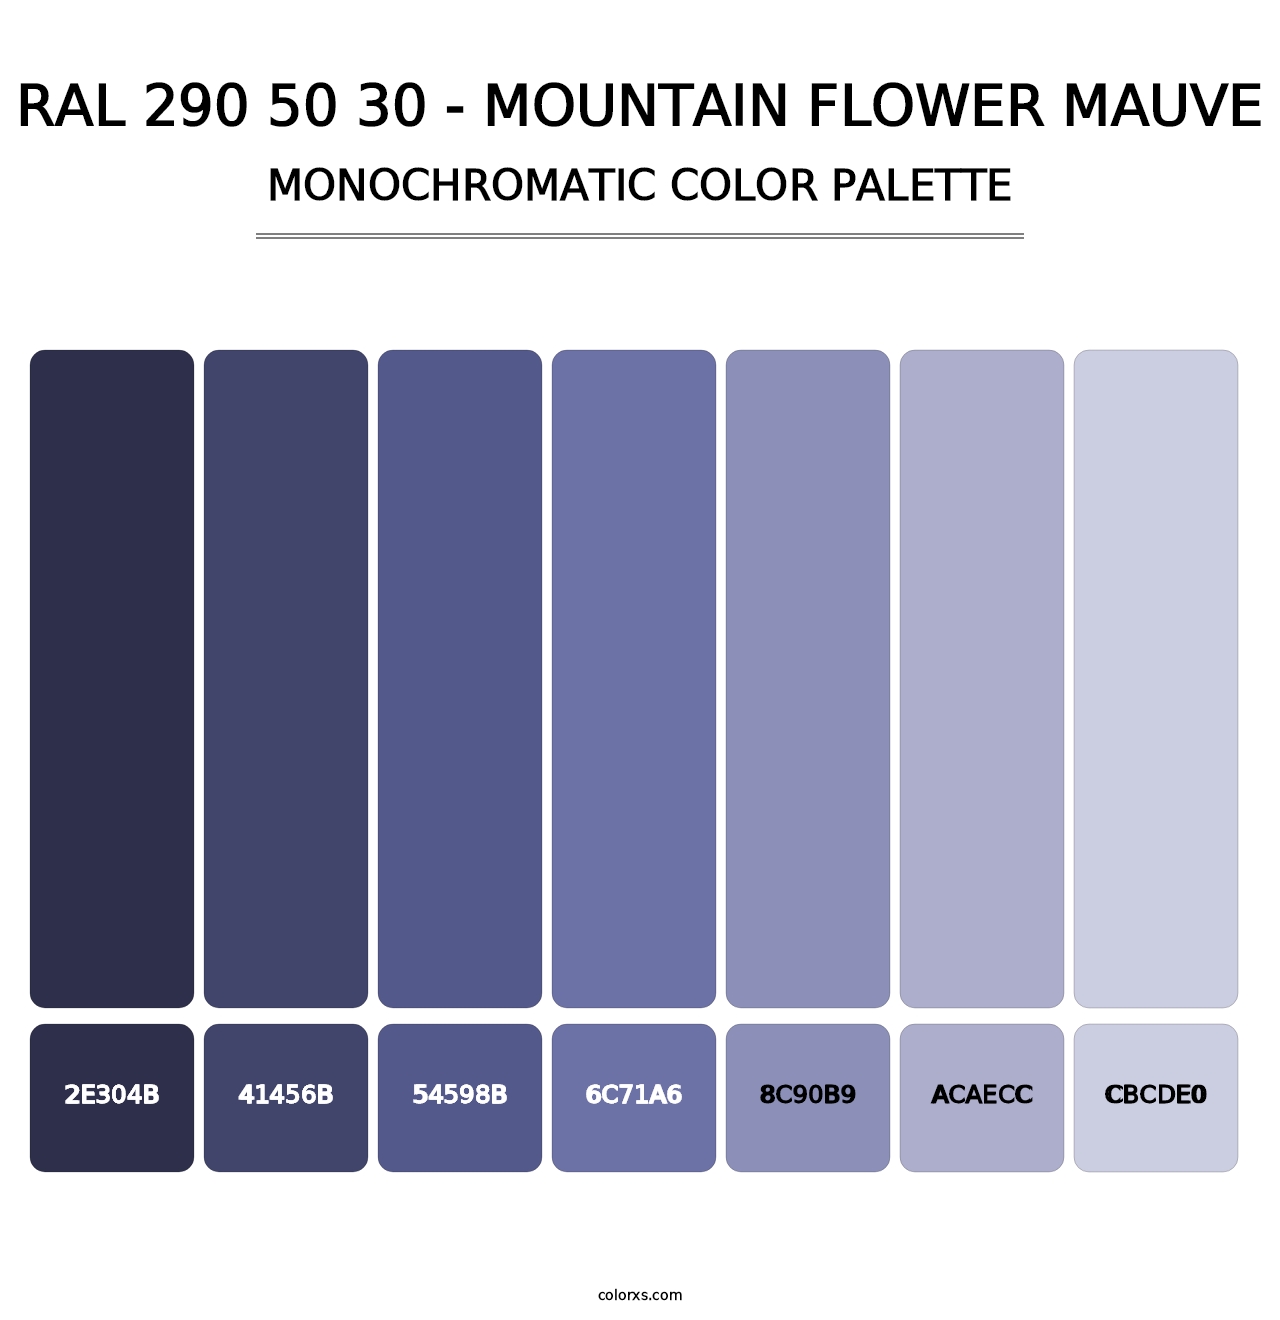 RAL 290 50 30 - Mountain Flower Mauve - Monochromatic Color Palette